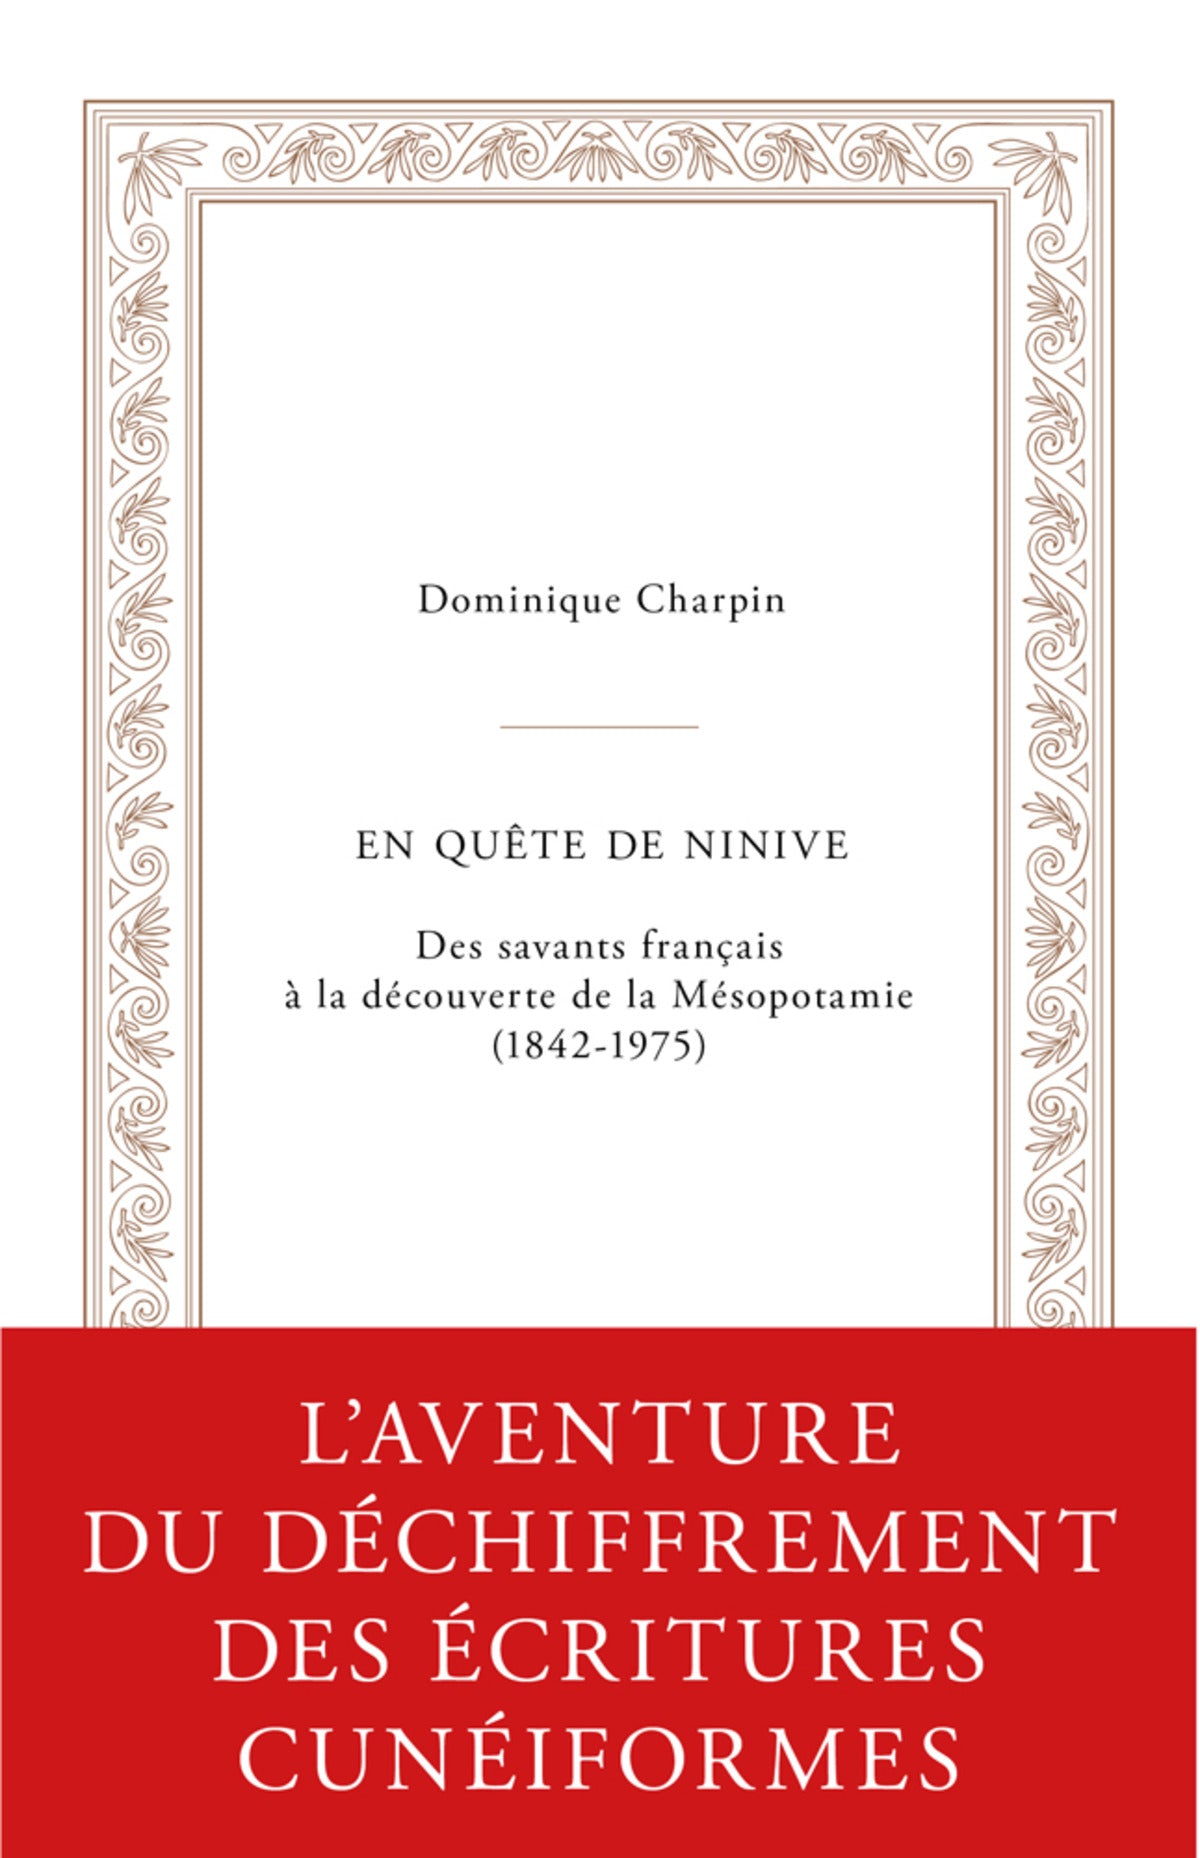 En quête de Ninive, des savants français à la découverte de la Mésopotamie (1842-1975).